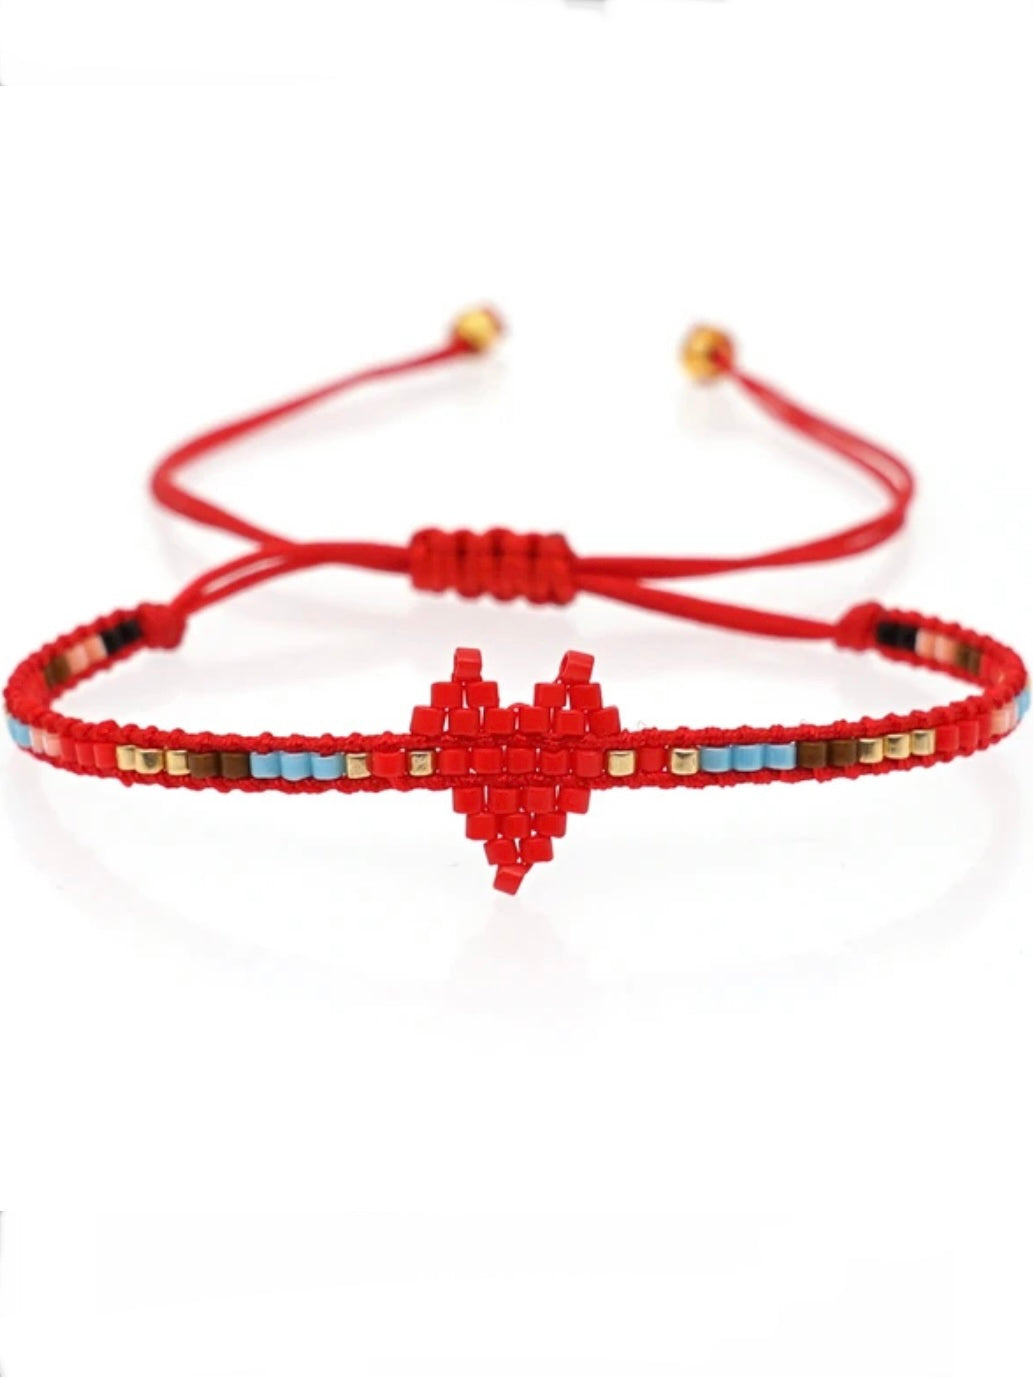 Little red heart thin braided bracelet